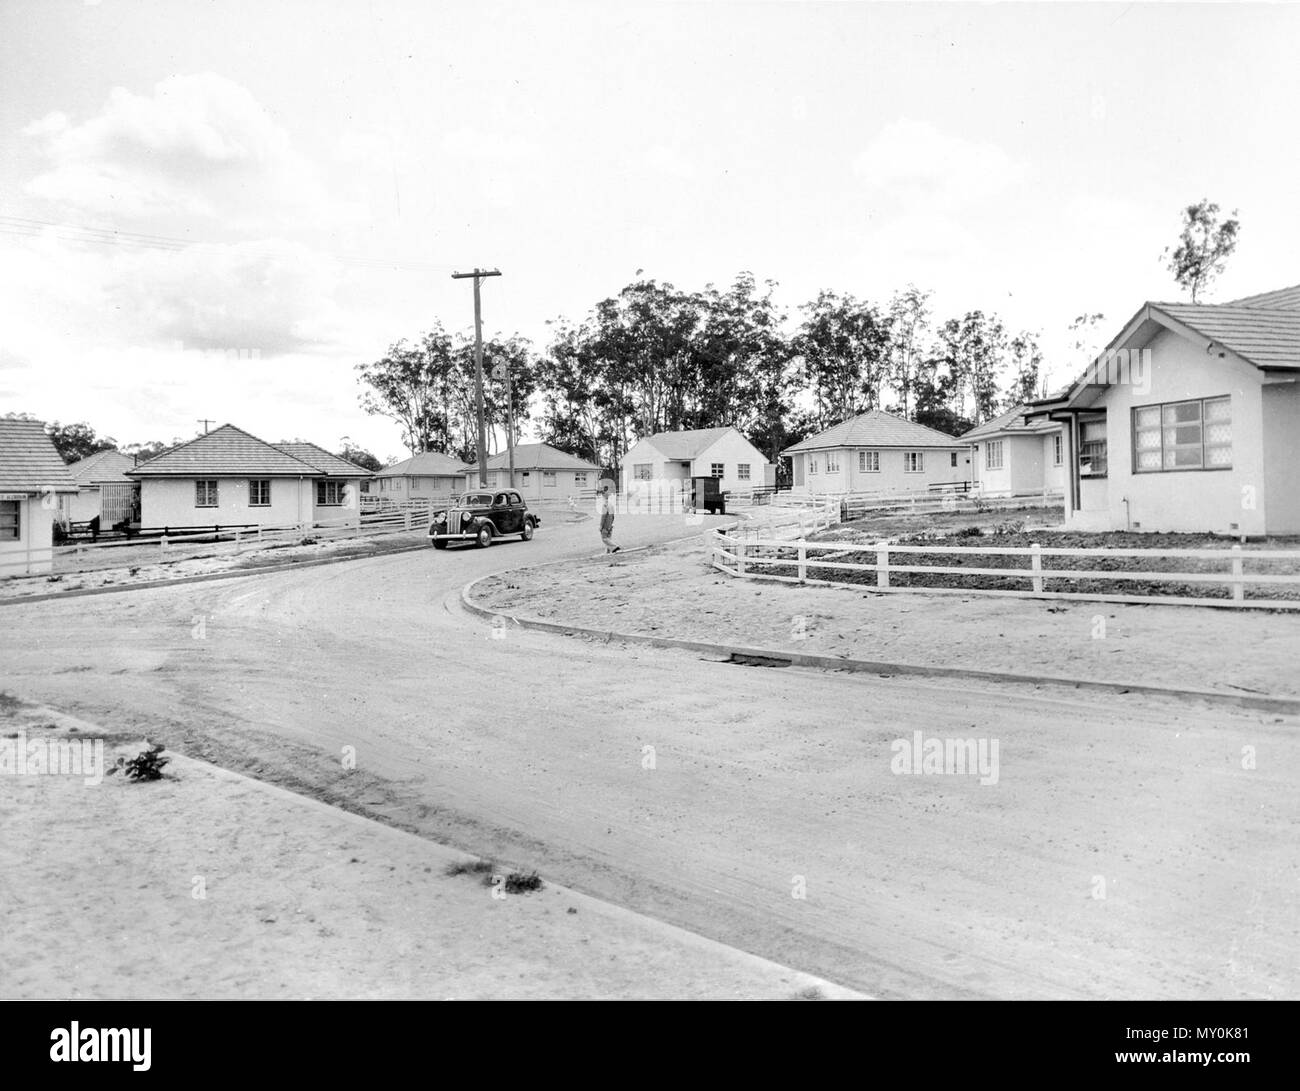 Commission du logement, immobilier Inala, septembre 1953. Le petit canton de Serviceton a été sélectionnée en 1946 par l'Serviceton Co-operative Society pour le développement afin de répondre à la pénurie de logement d'après-guerre. La société a acheté 850 acres de terrain qui a été reprise par la Commission du logement du Queensland en 1950, à laquelle il a ajouté un autre 200 acres. La zone a été renommée Inala en 1953 pour éviter la confusion avec la ville de Serviceton en Australie du Sud. Inala fut conçu comme une ville satellite de Brisbane et maisons ont été en grande partie avec des éléments de style néo-moderniste de l'Art Déco. Banque D'Images